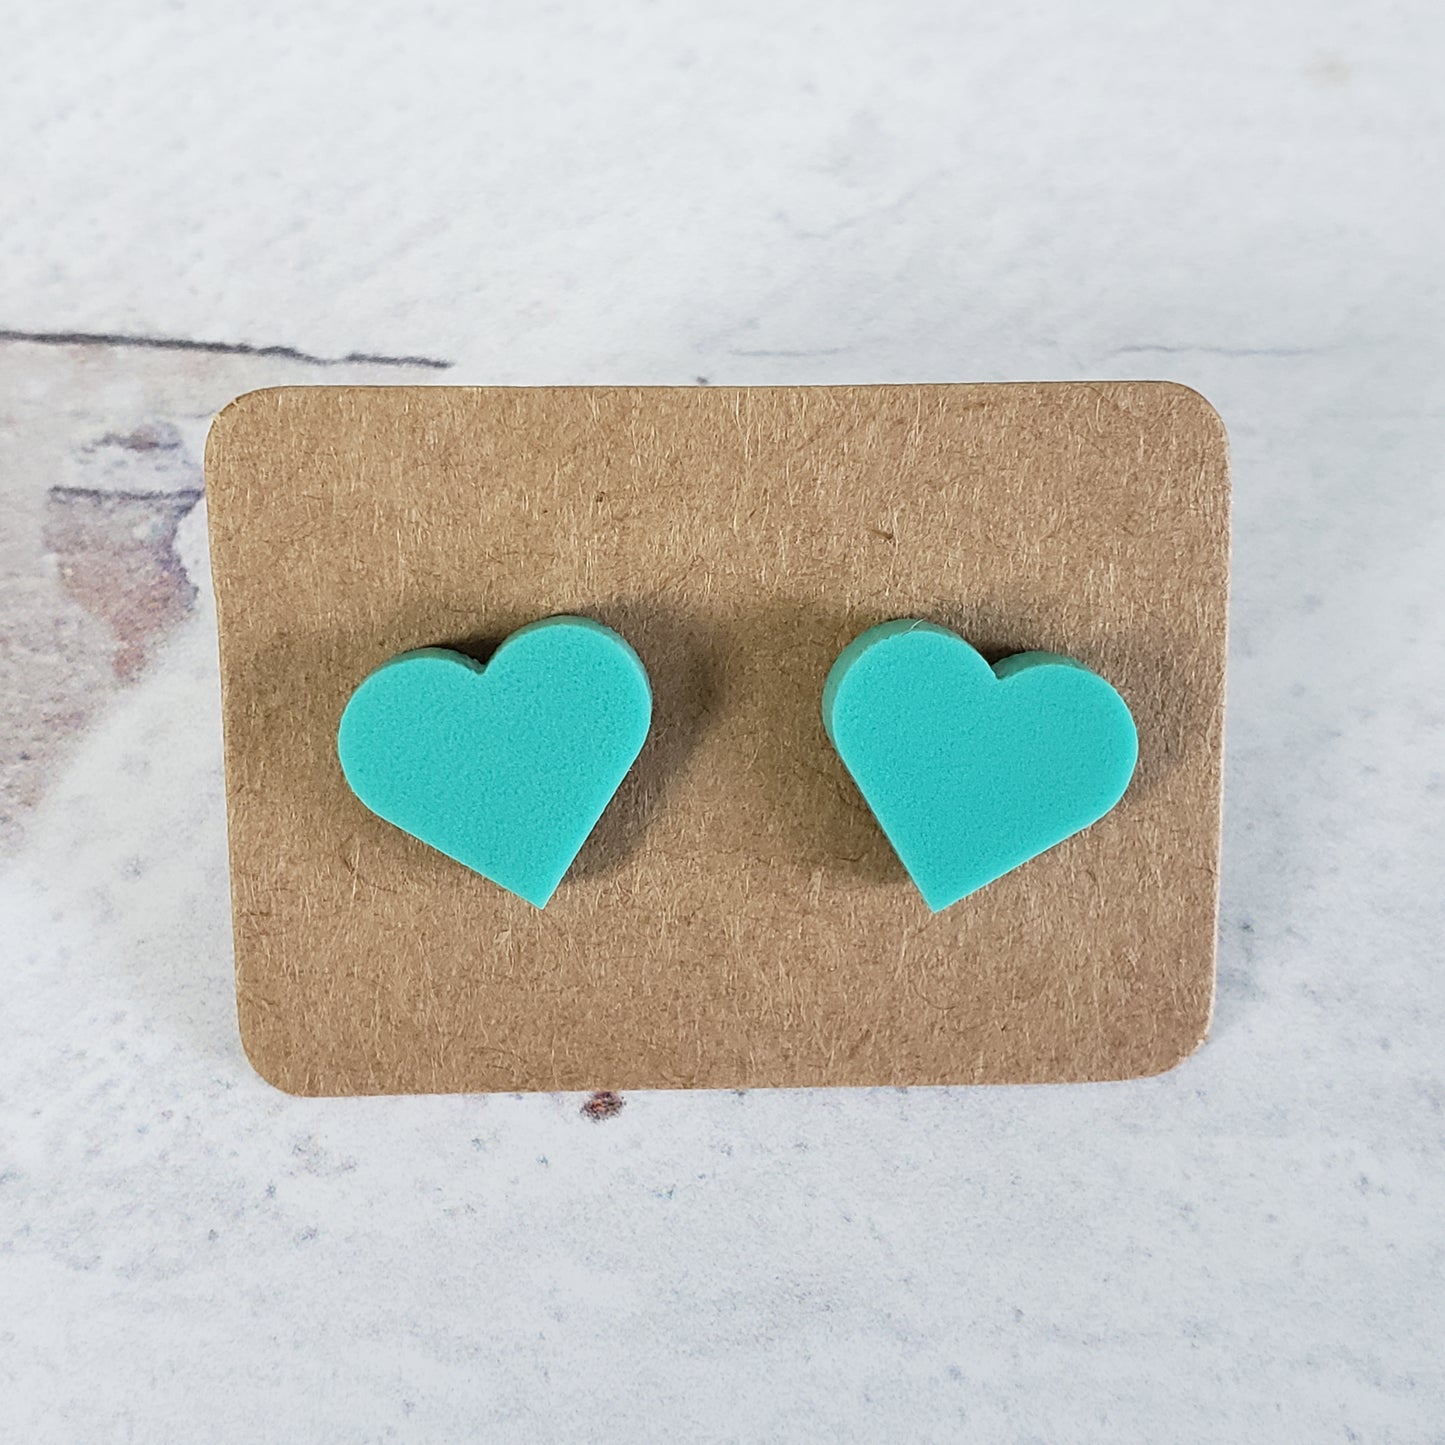 Matte mint green heart shaped stud earrings.